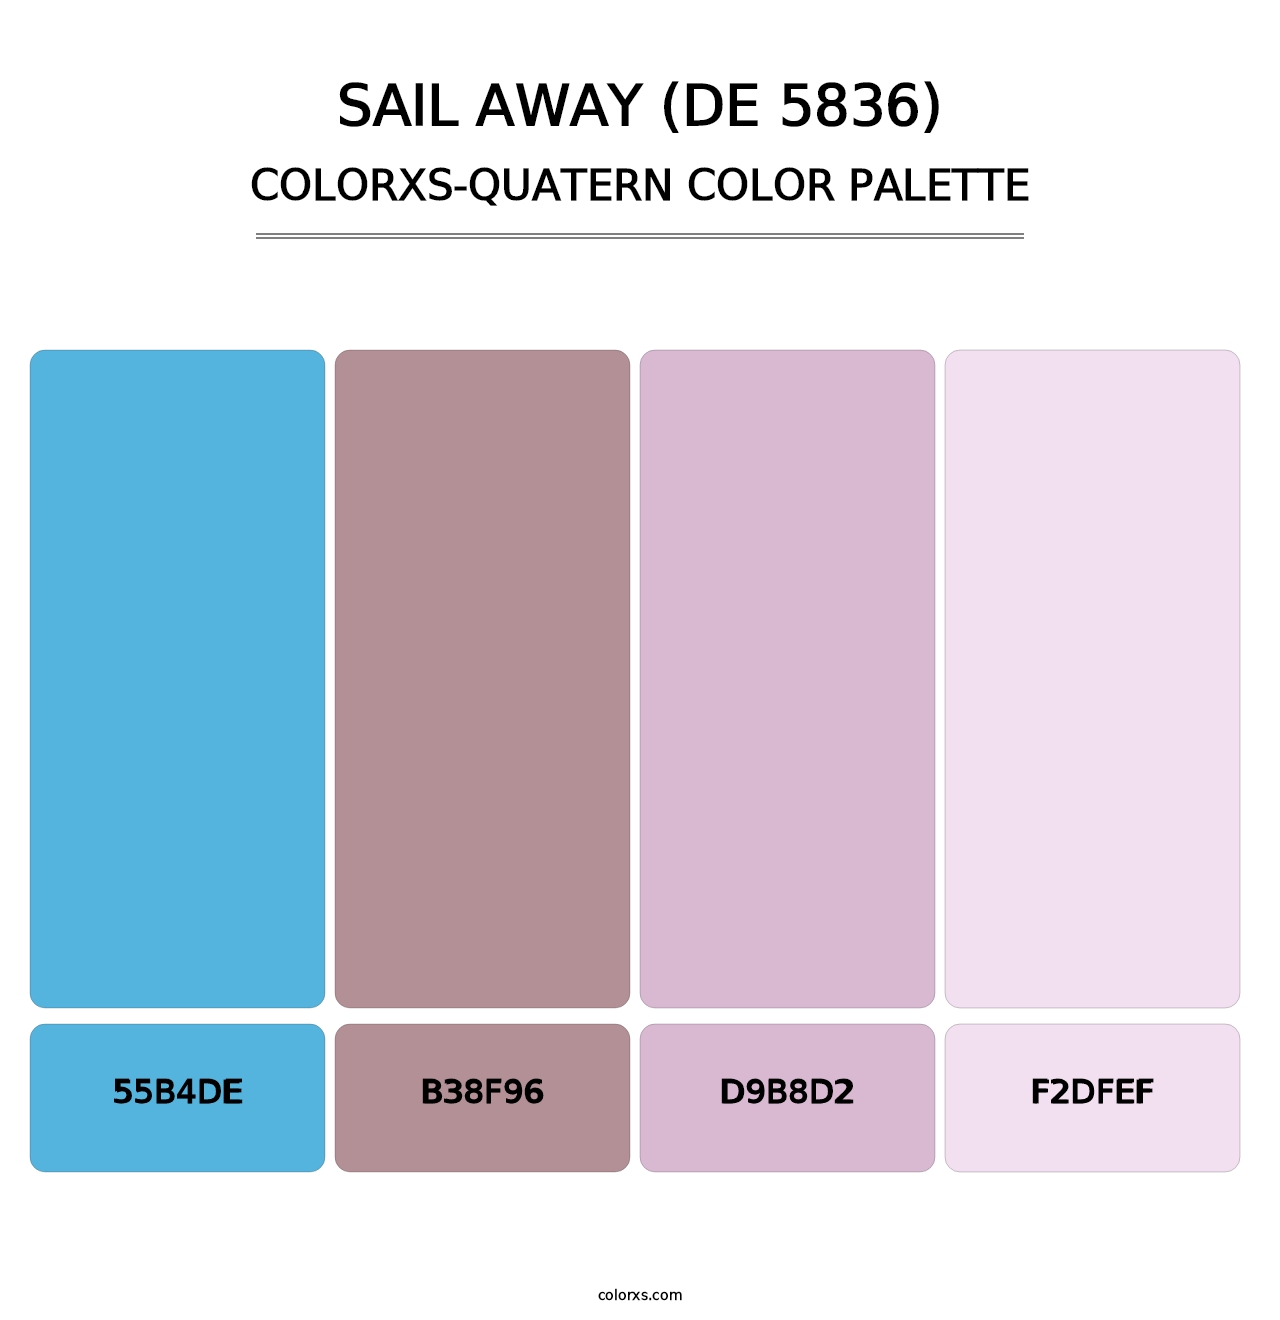 Sail Away (DE 5836) - Colorxs Quatern Palette